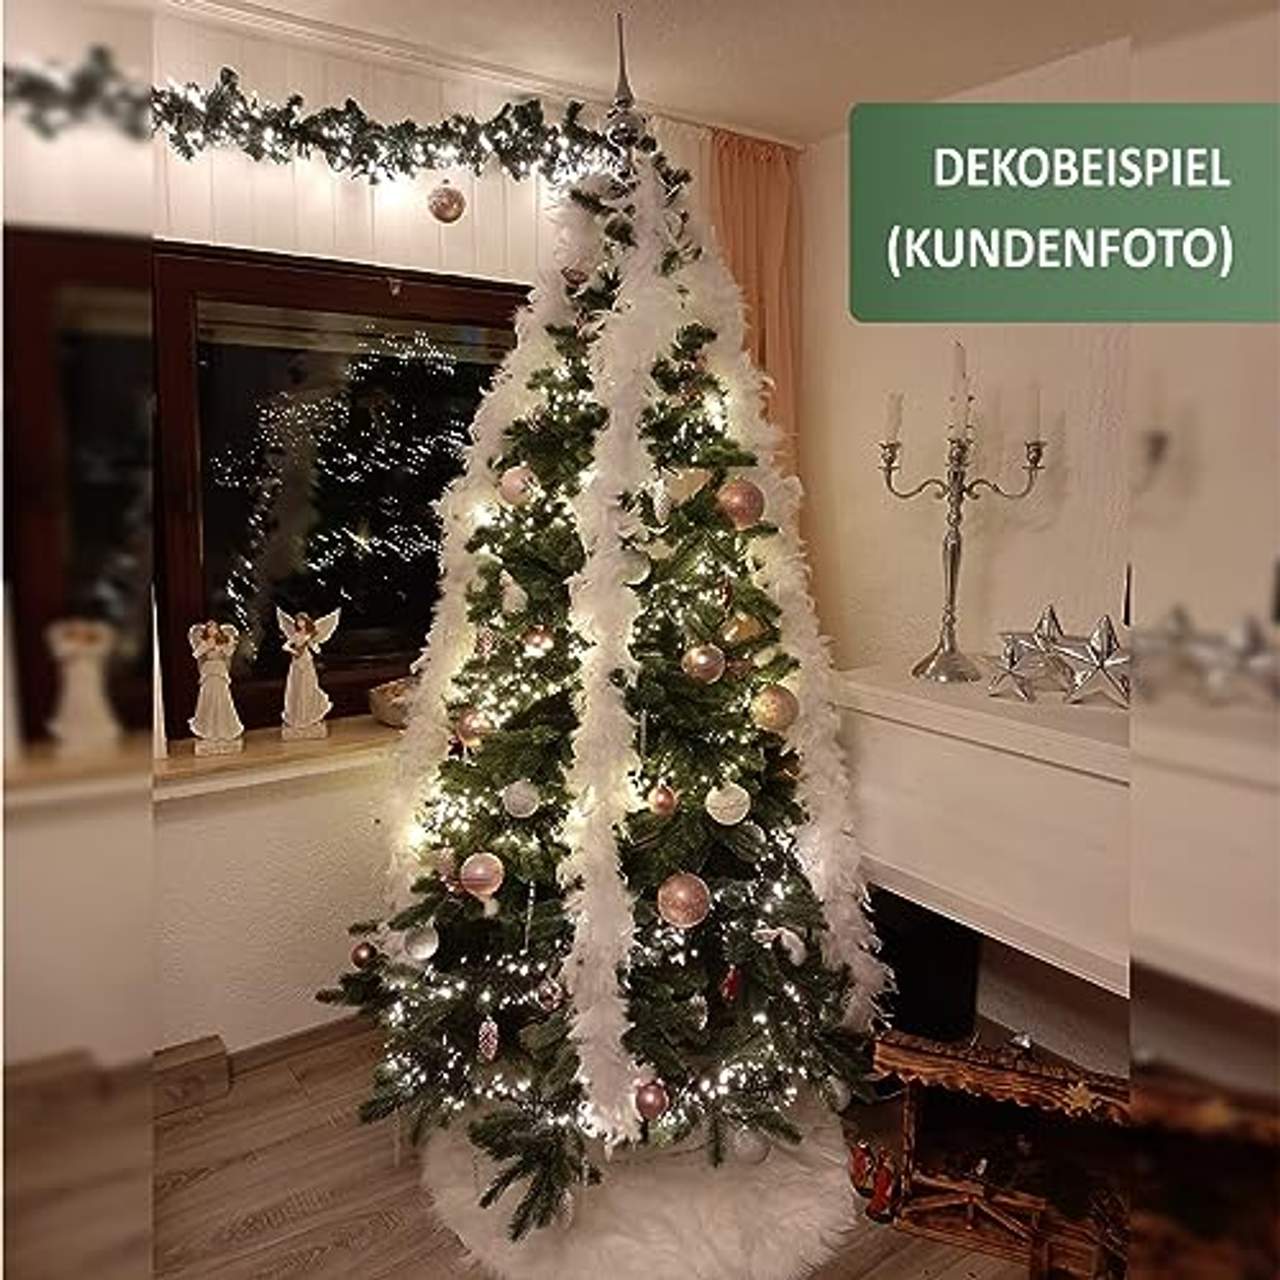 Xenotec Voll PE Weihnachtsbaum künstlich